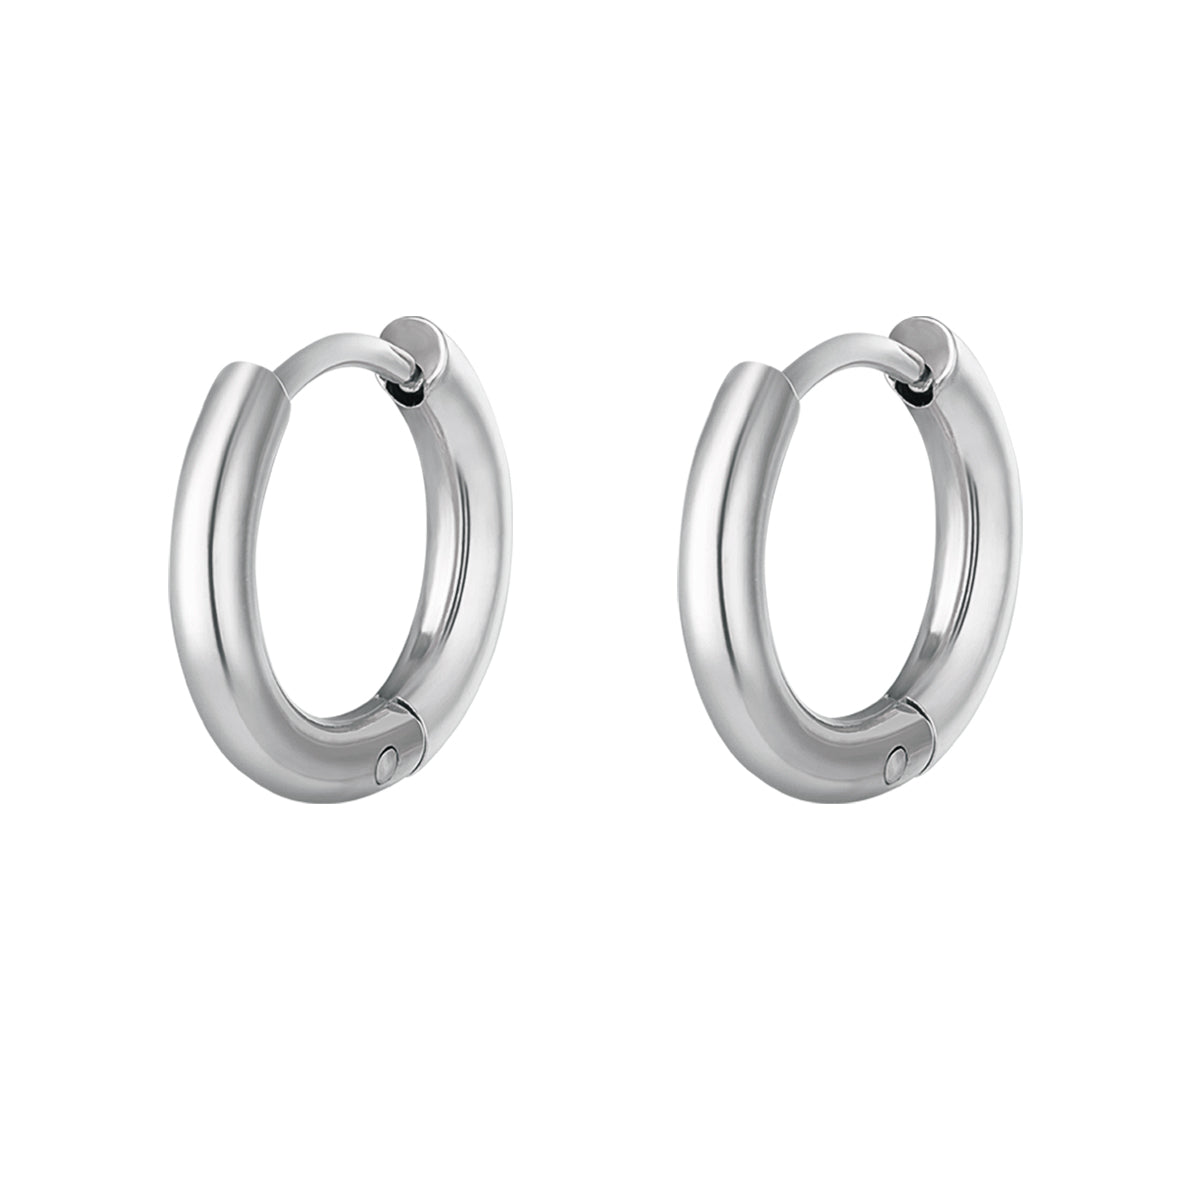 Small earrings | Silver